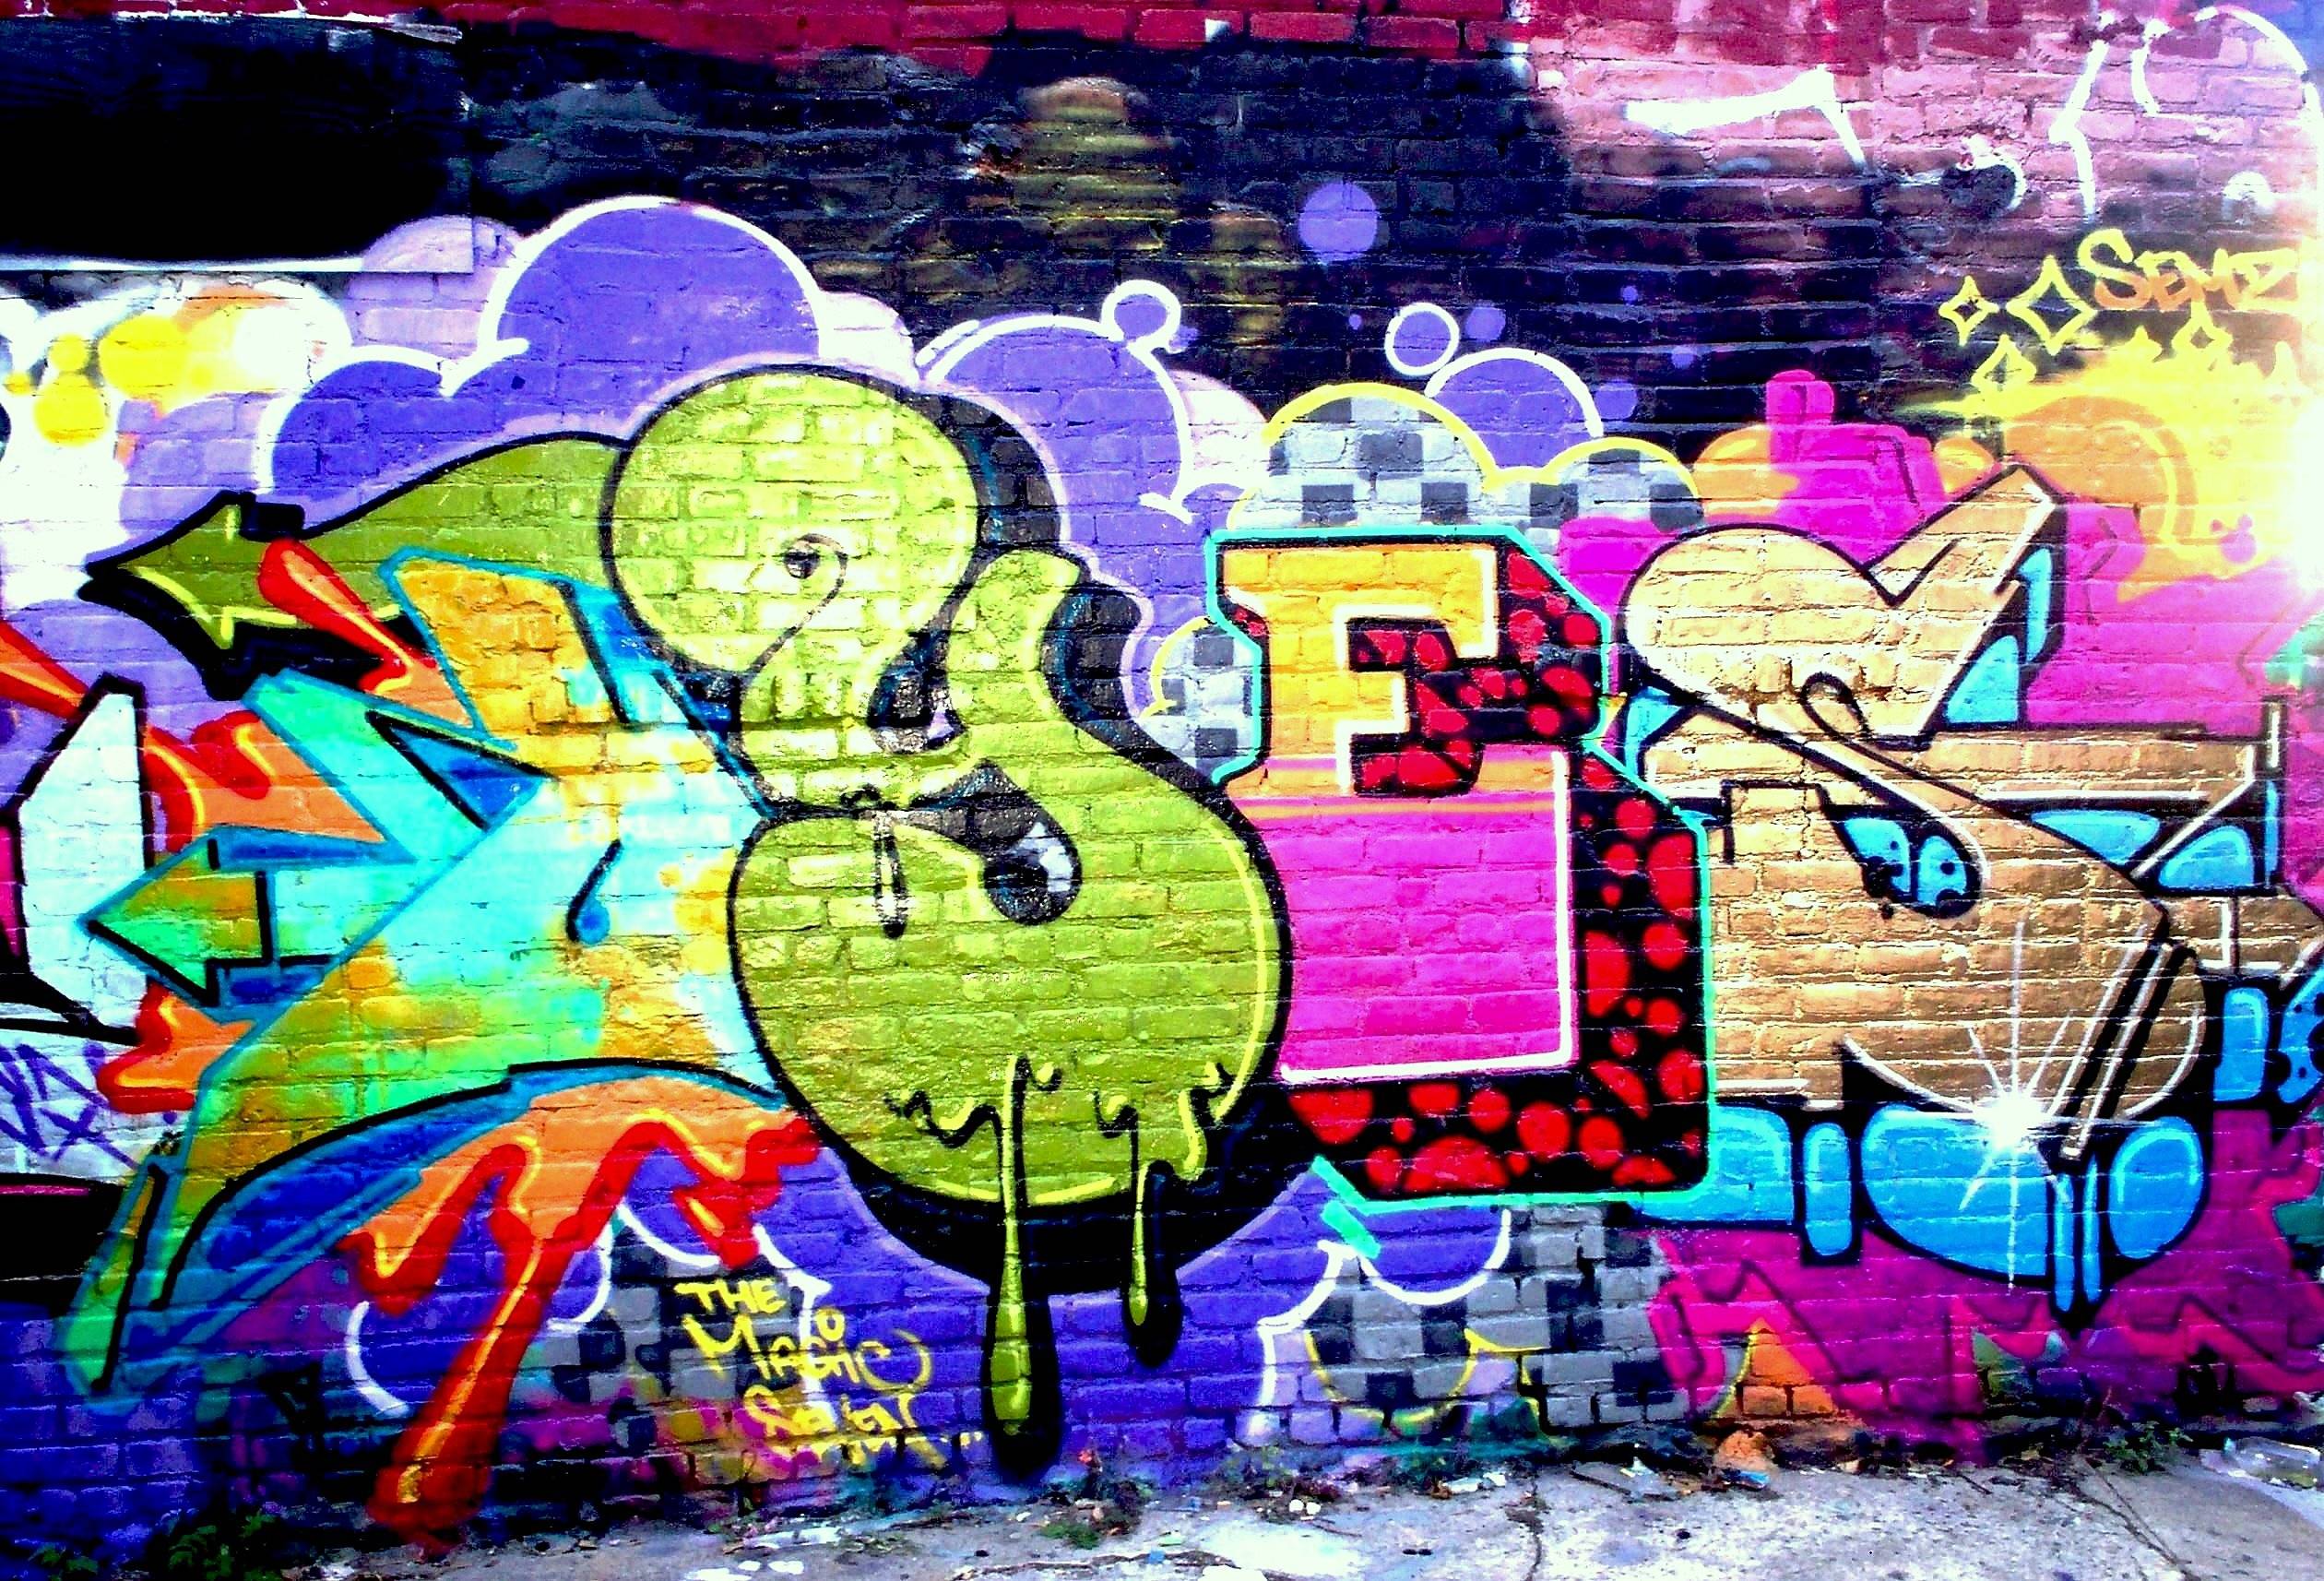 Descargue imágenes gratuitas de Graffiti Wallpaper para laptop y computadoras